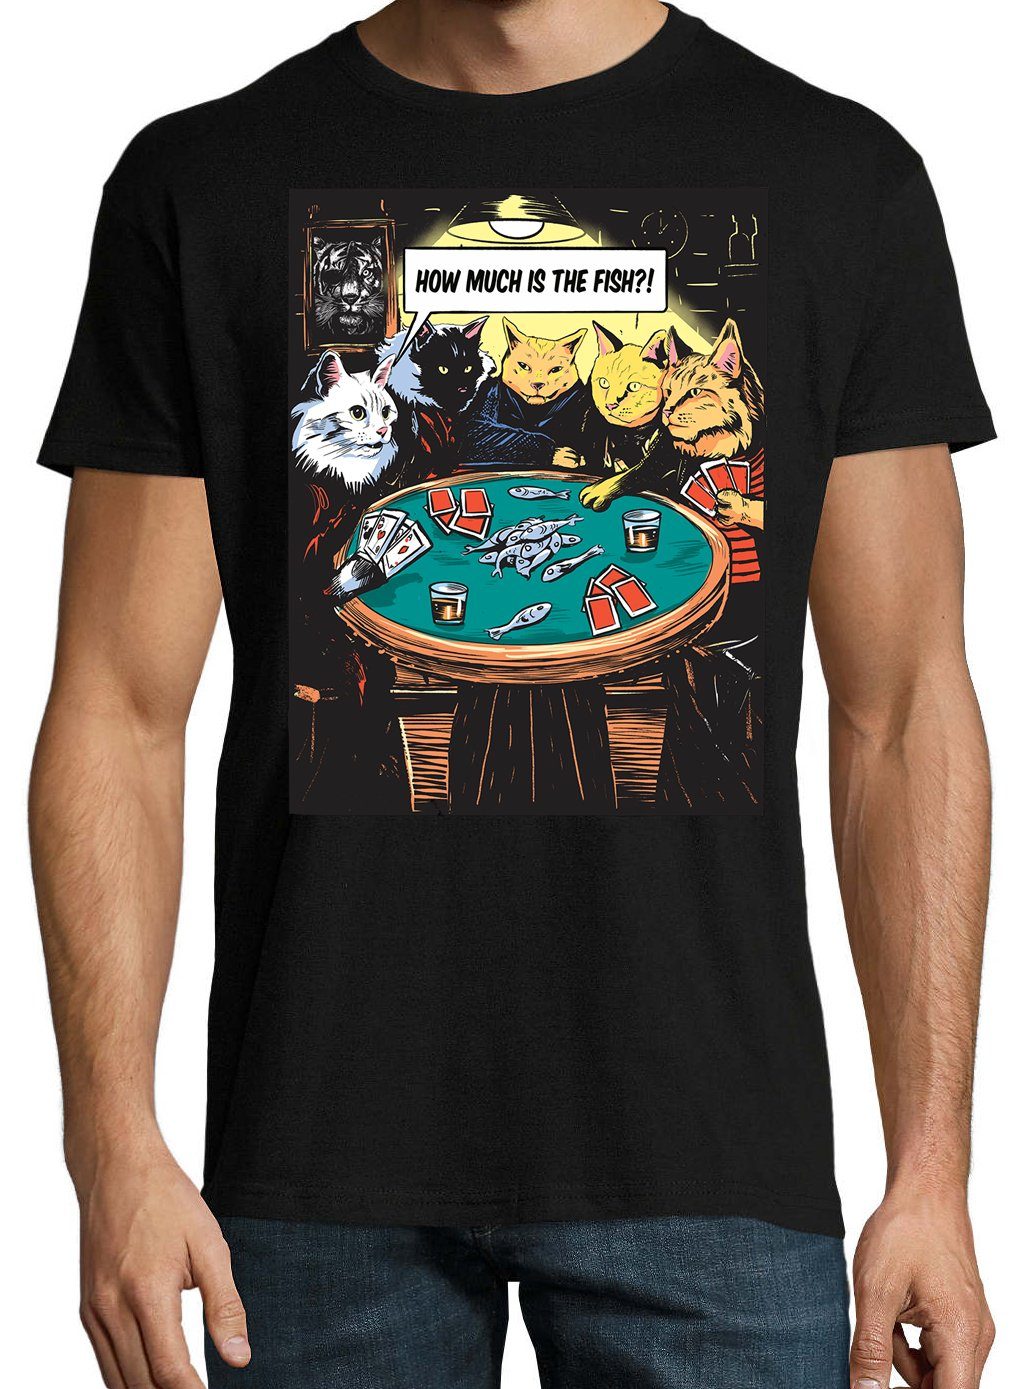 The Designz Is trendigem Herren Much Fish?" Shirt "How Youth Schwarz mit Poker Frontprint T-Shirt